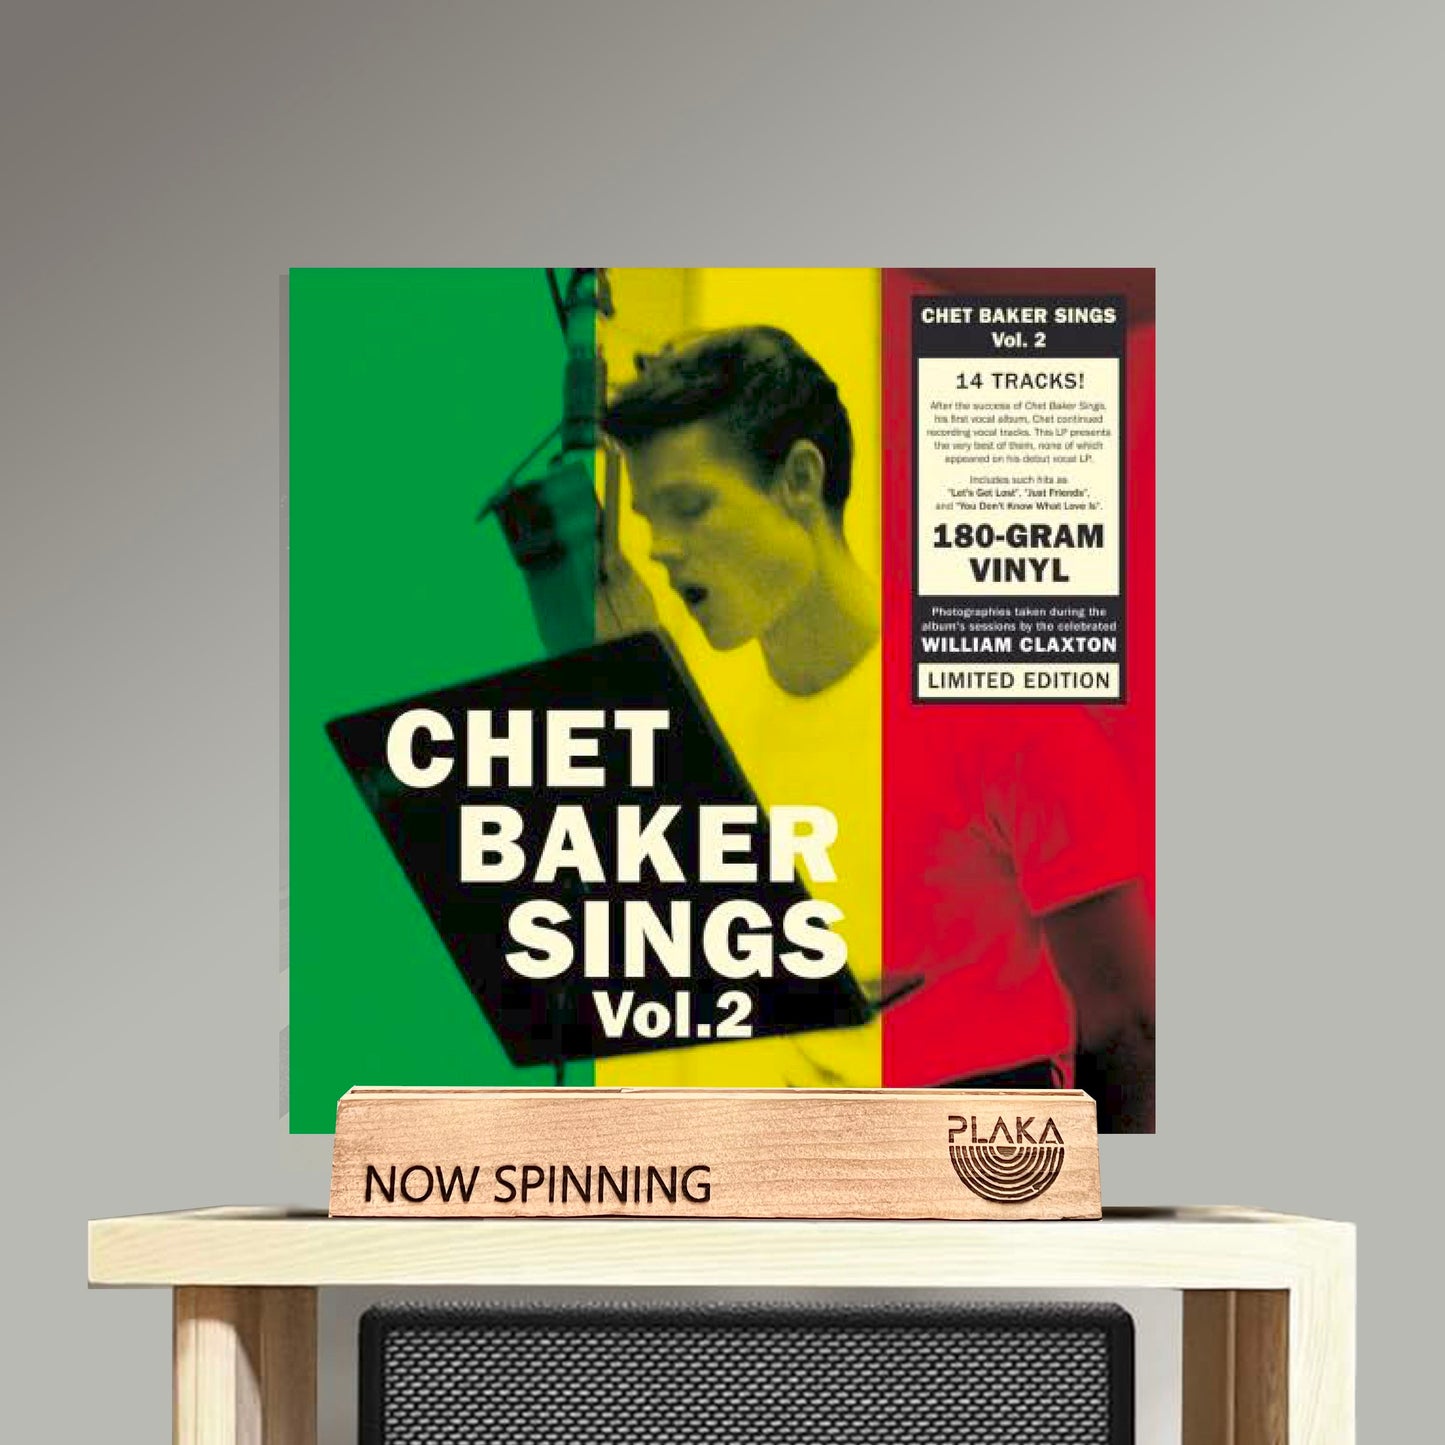 Chet Baker Sings Vol. 2